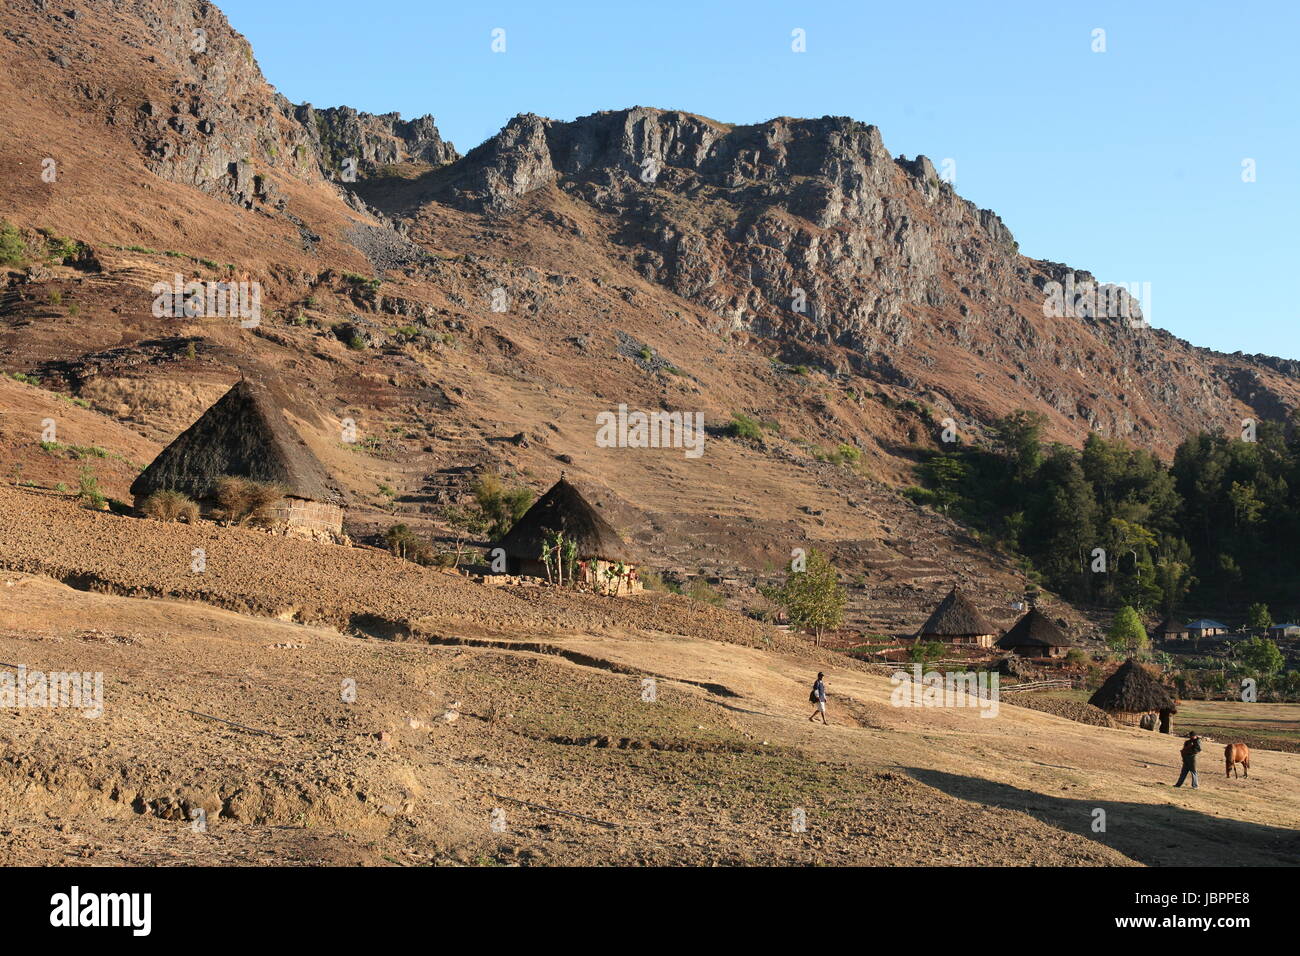 Die Berglandschaft beim Bergdorf Maubisse suedlich von Dili in Timor Ost auf der in zwei getrennten Insel Timor nell Asien. Foto Stock